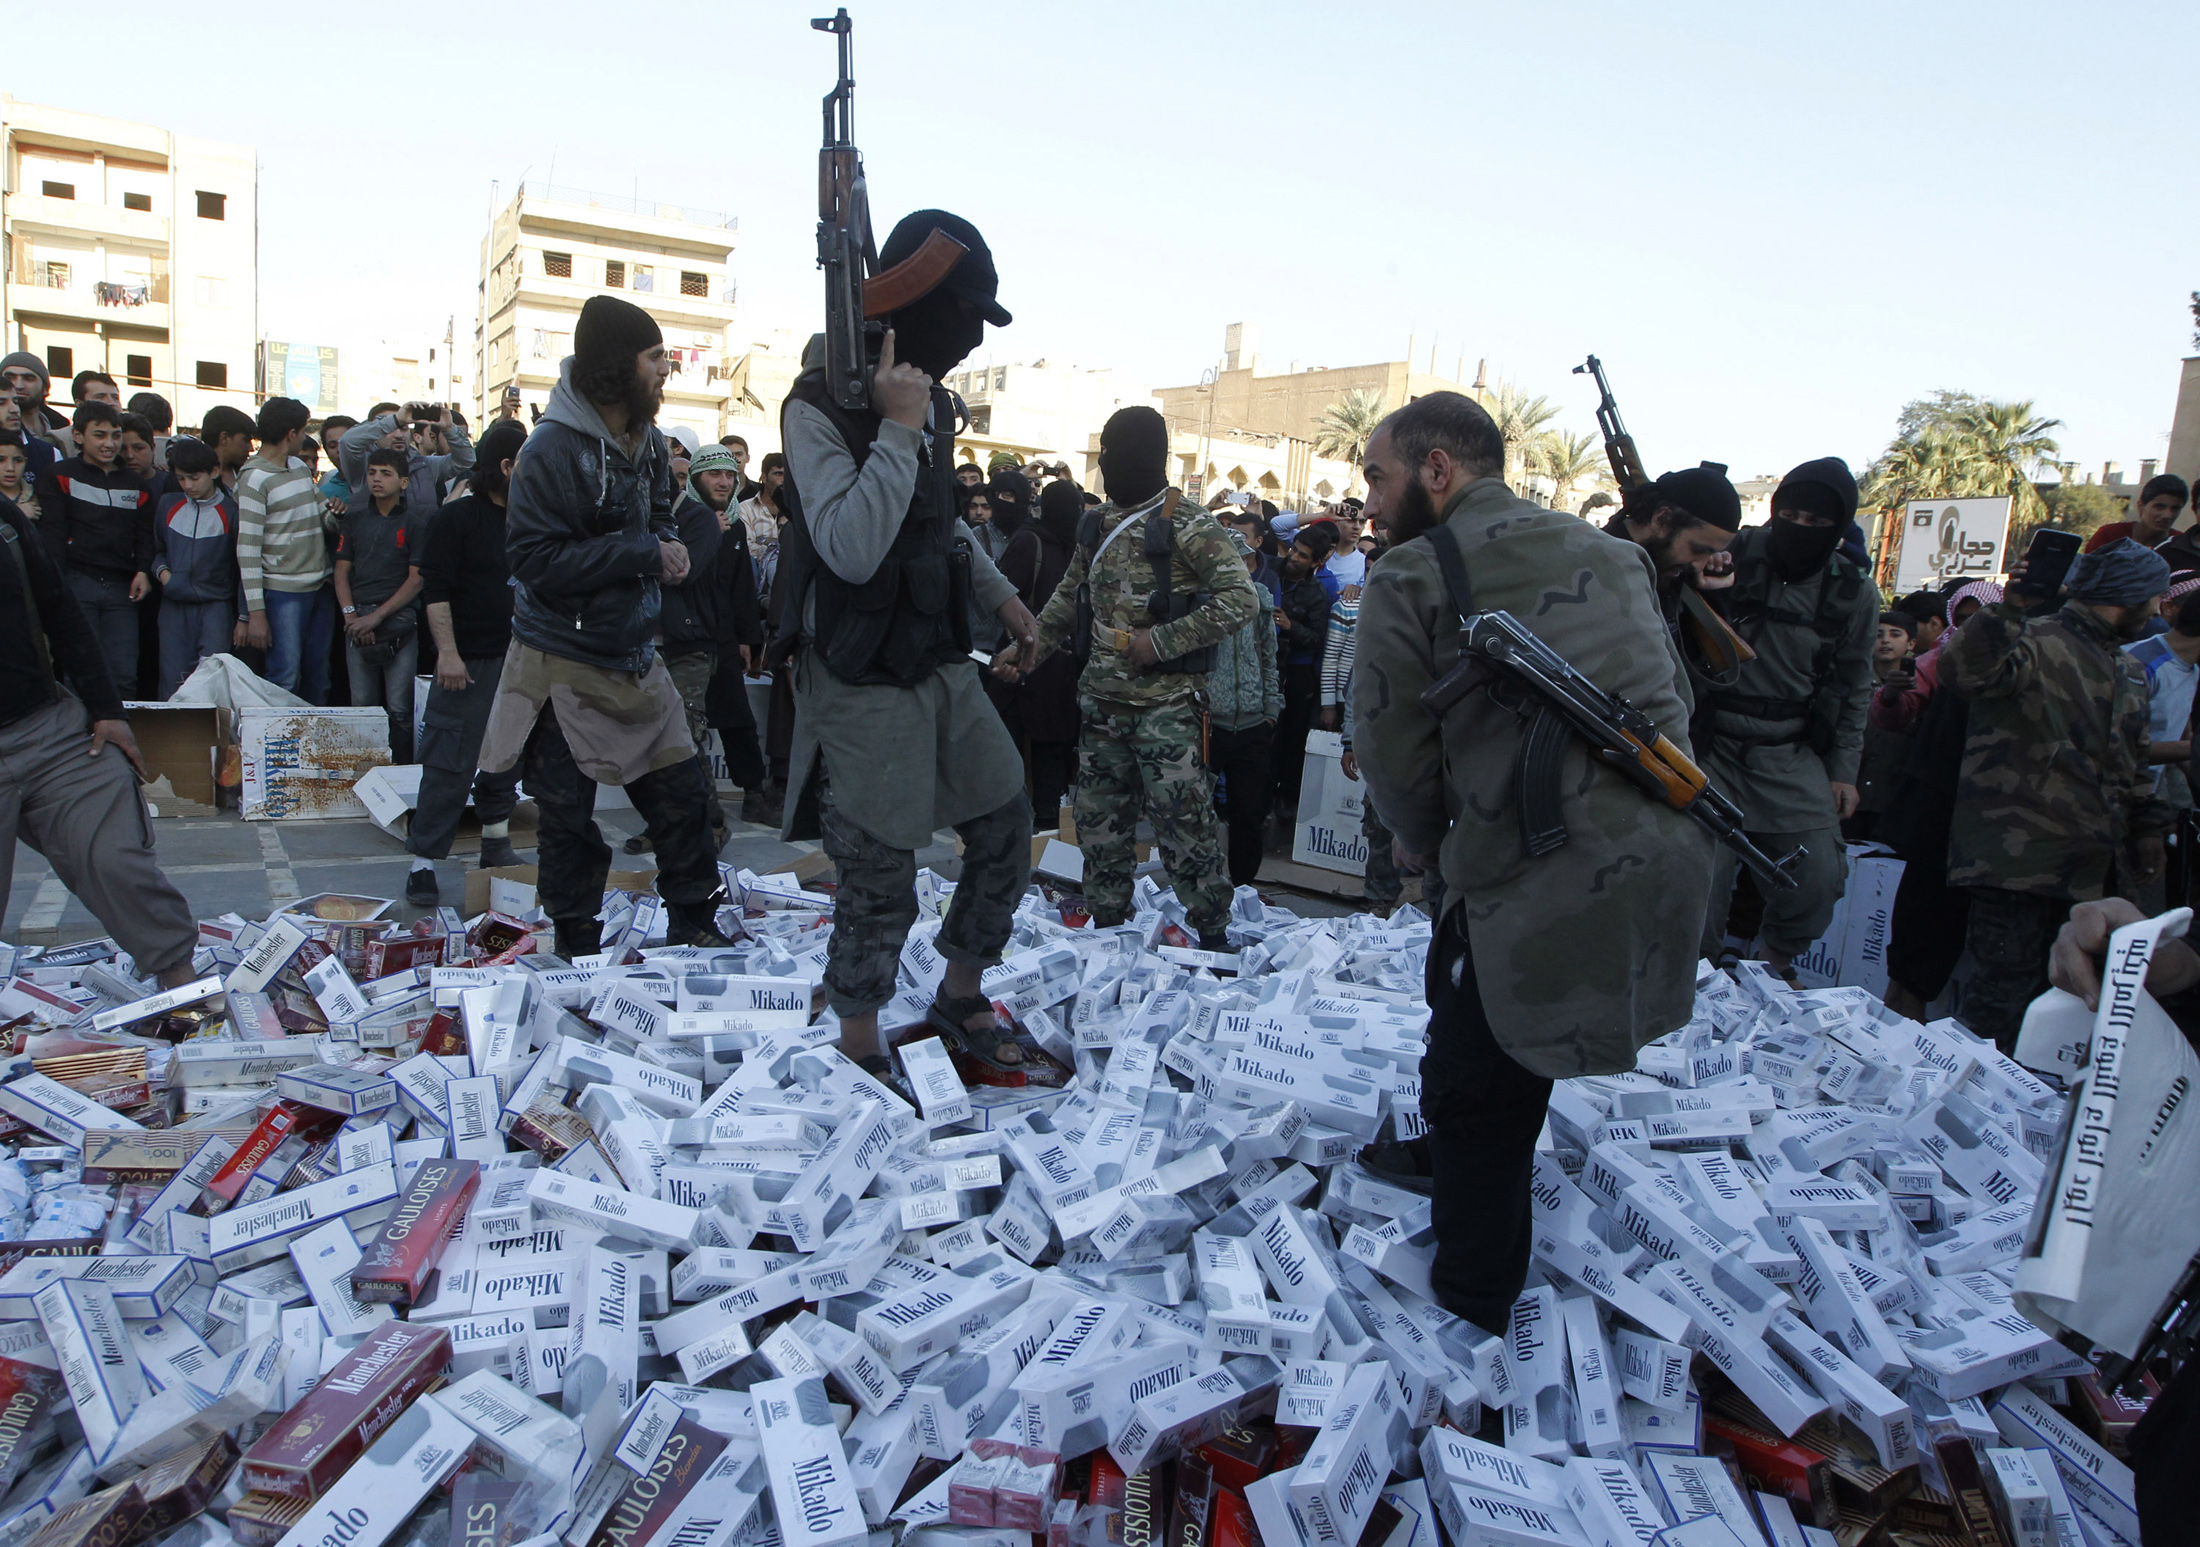 مقاتلون من تنظيم الدولة الإسلامية يحملون أسلحتهم ويقفون على عبوات سجائر مصادرة قبل حرقها، الرقة، سوريا، 2 أبريل 2014. رويترز، صحفي محلي.